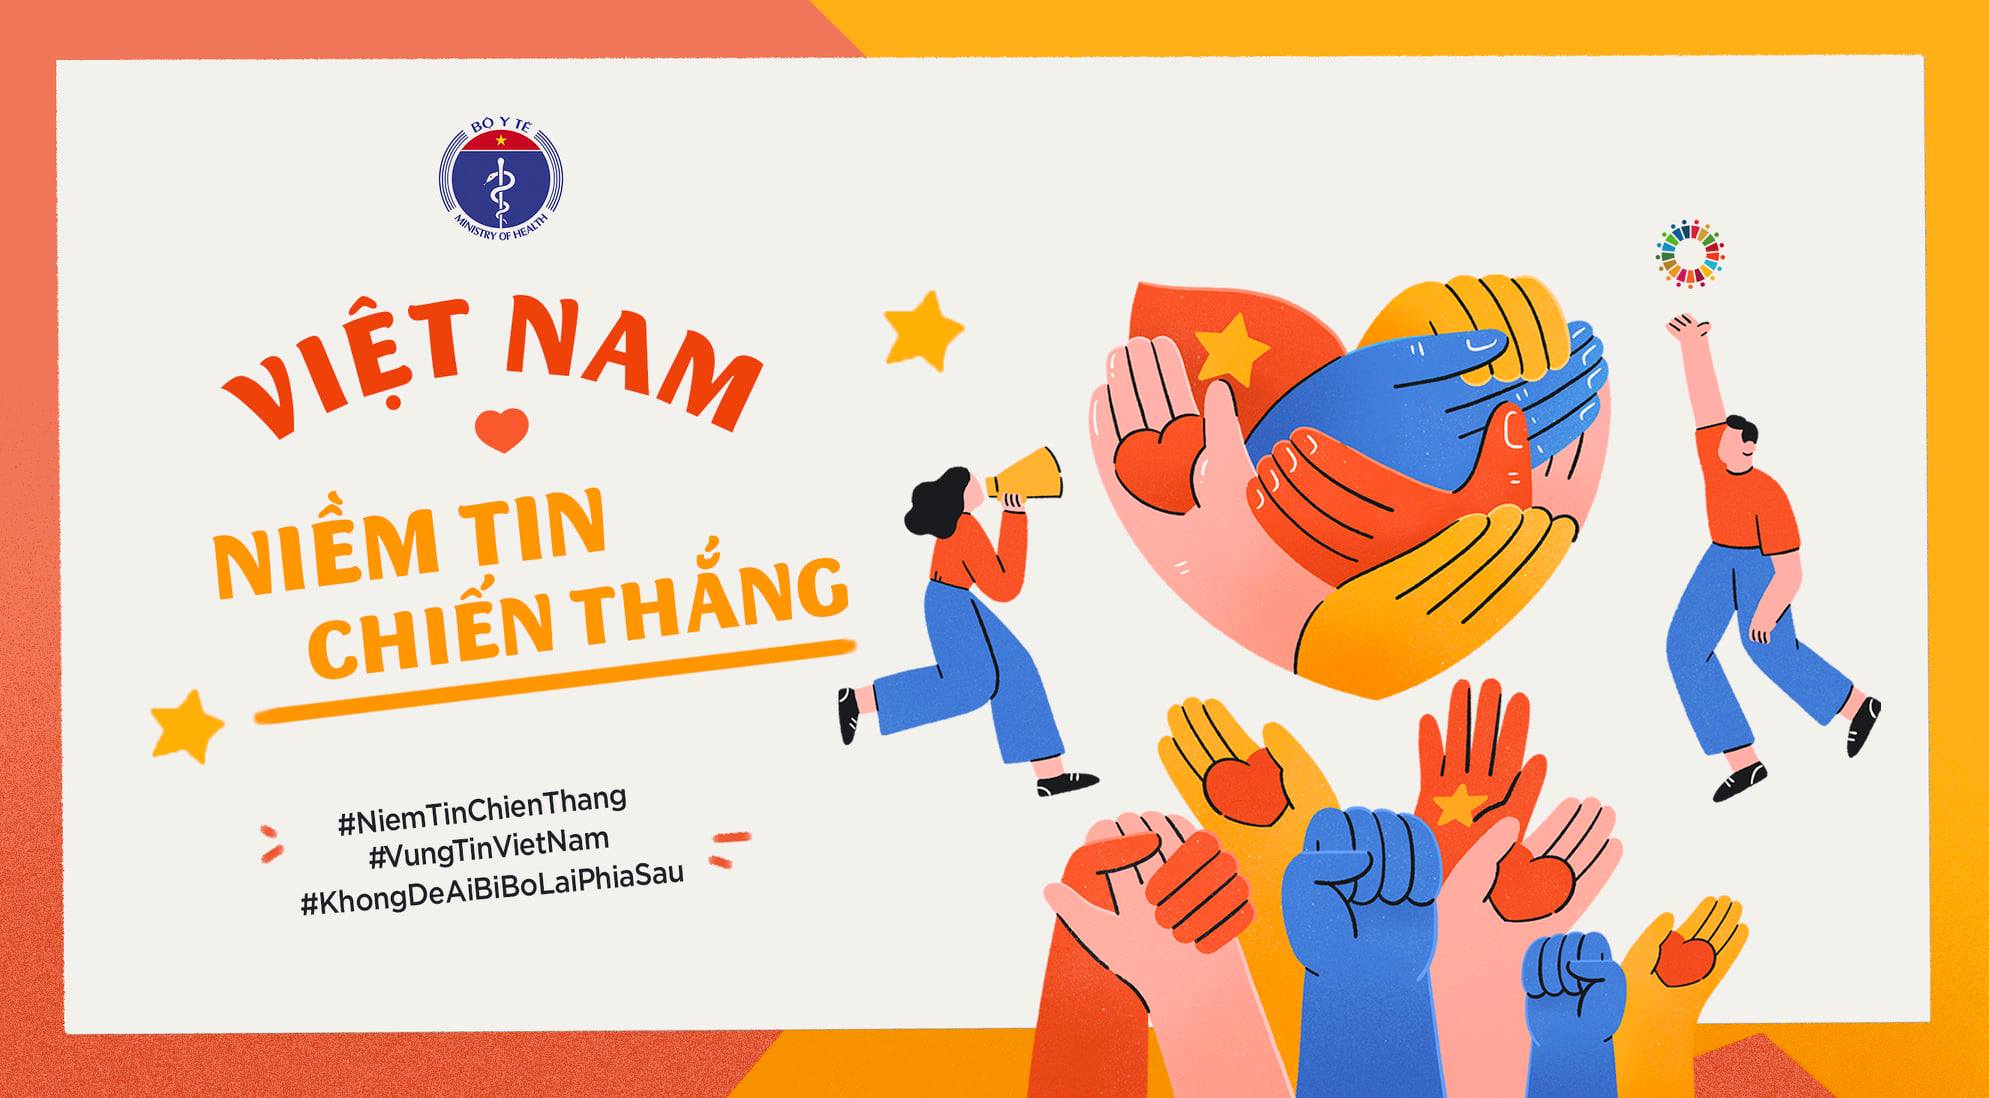 Niềm tin là chìa khóa thành công, hãy xem những hình ảnh về những con người Việt Nam với niềm tin mãnh liệt vào tương lai, những sự hy vọng và đam mê của họ để trở thành nguồn cảm hứng cho chính bạn.